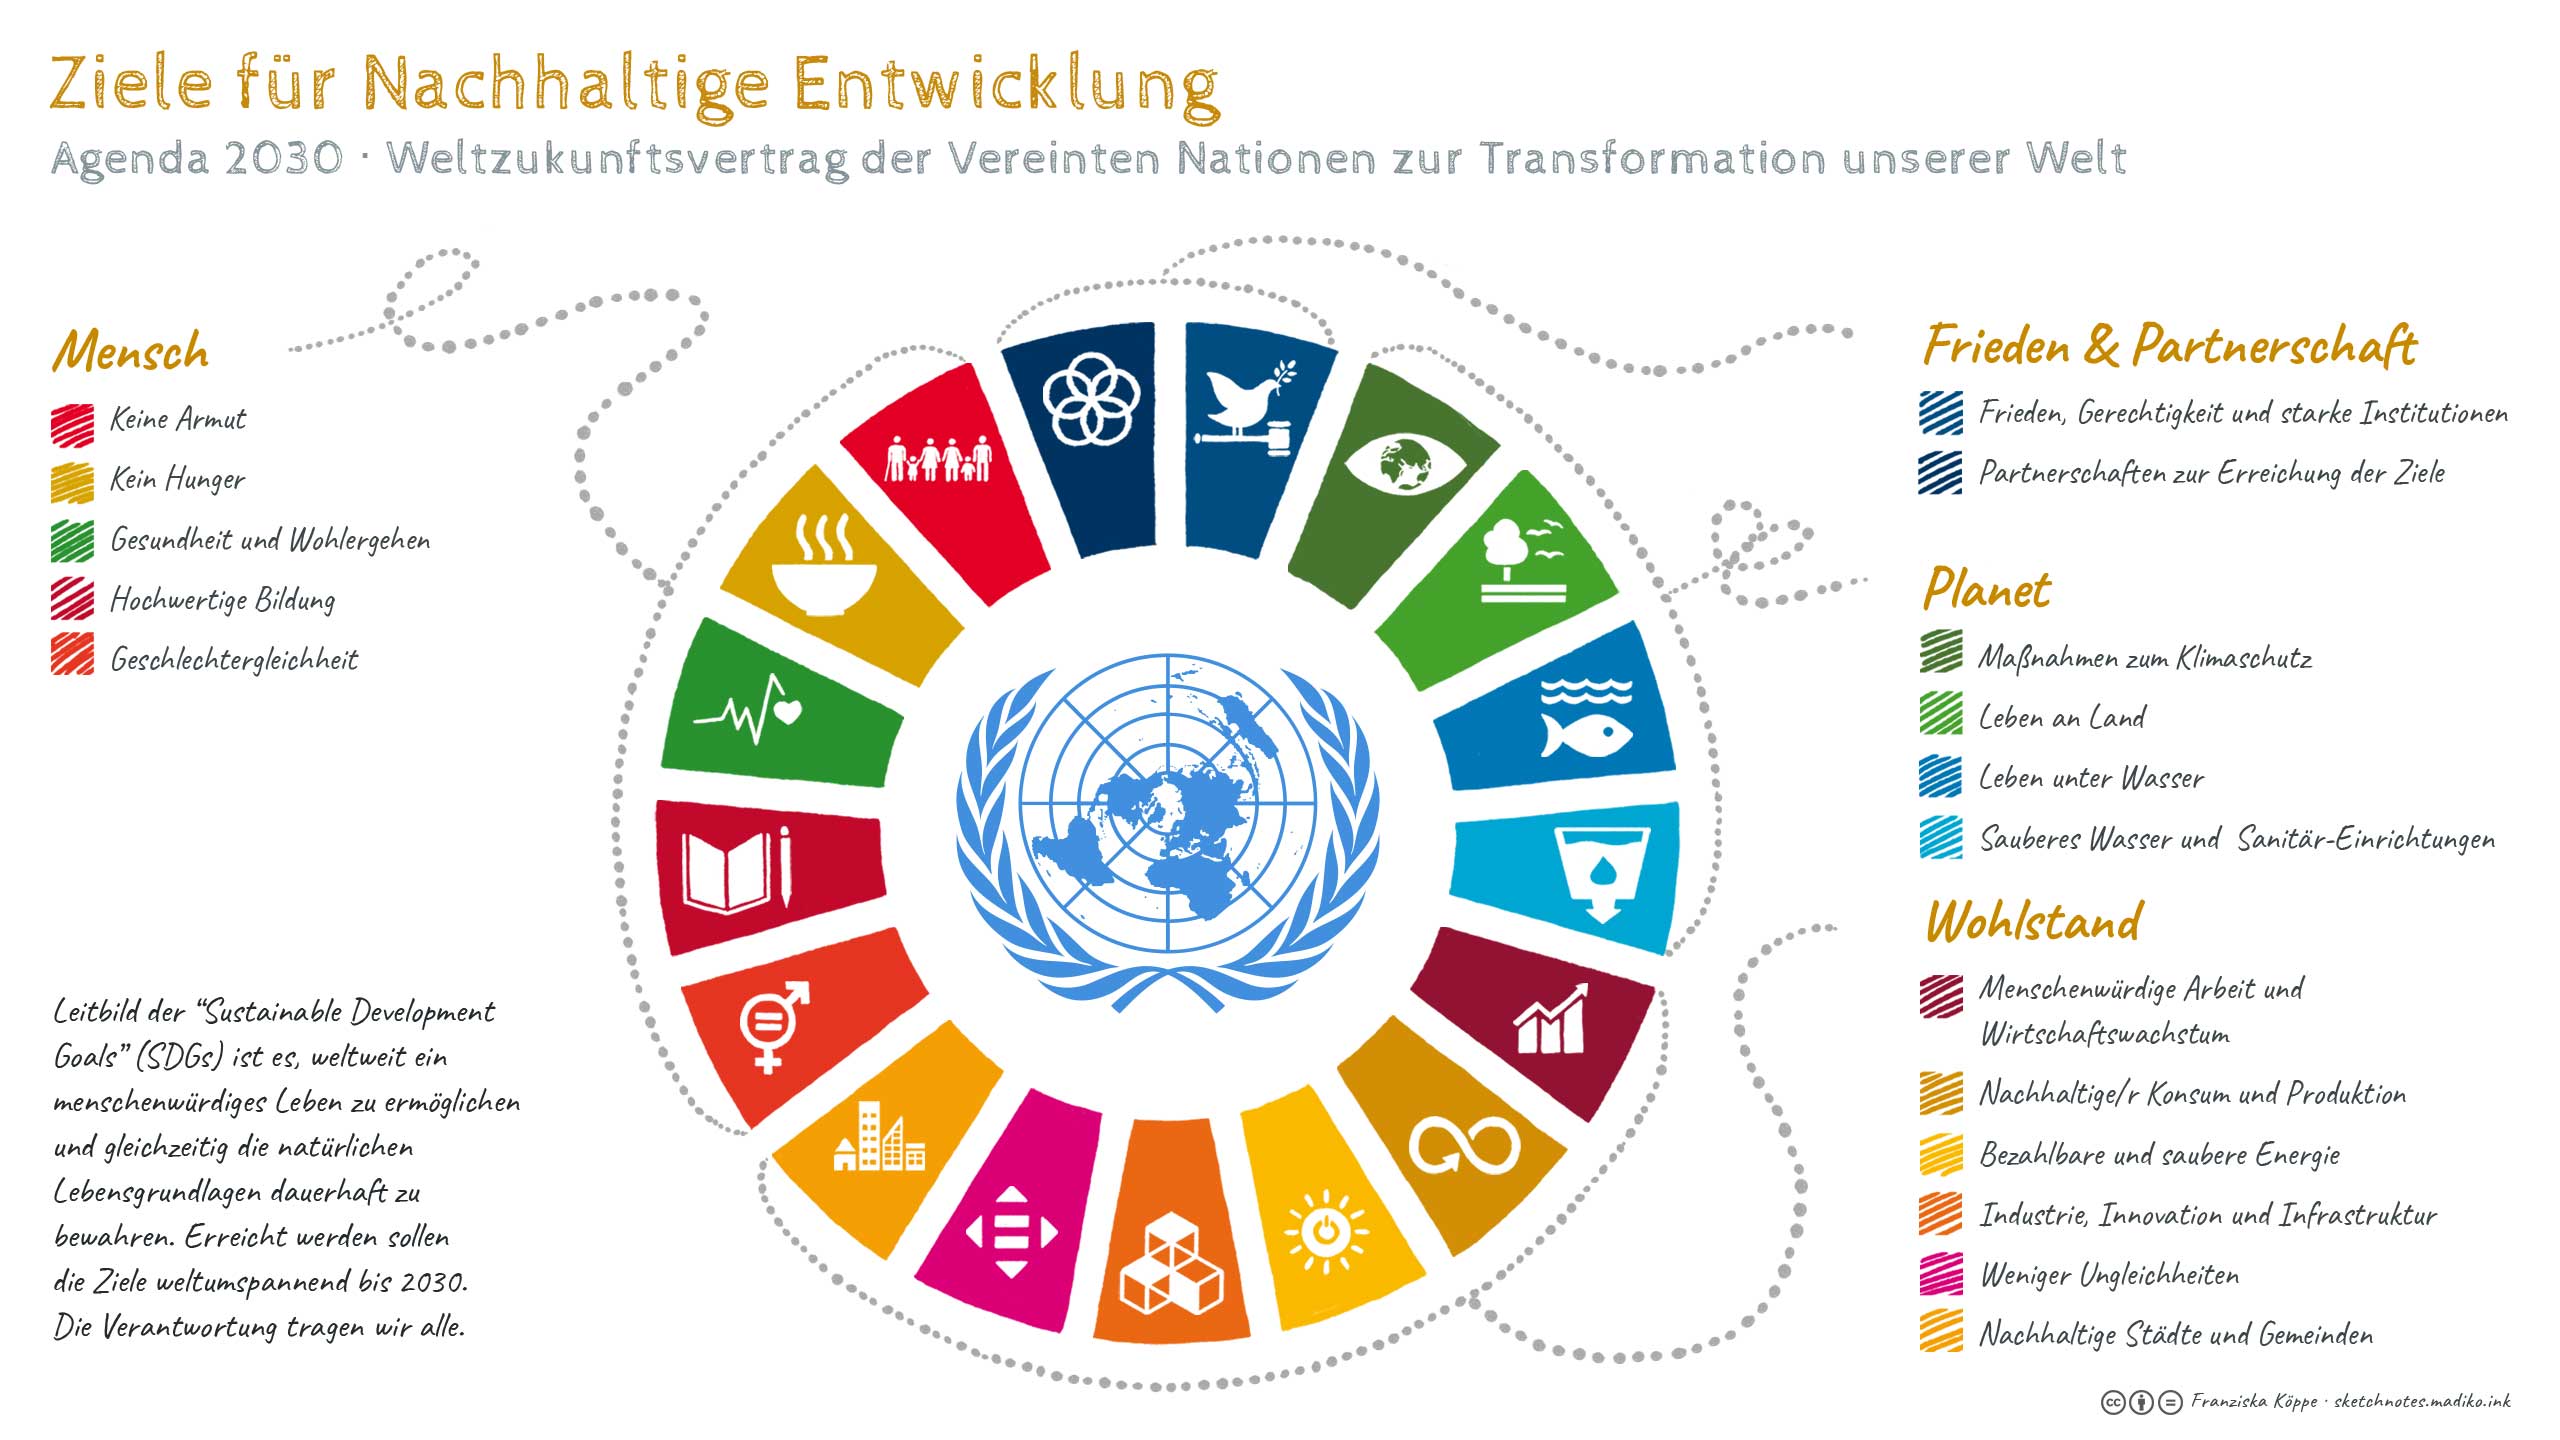 Ziele für Nachhaltige Entwicklung / Sustainable Development Goals / SDGs / Agenda 2030 - Sketchnotes